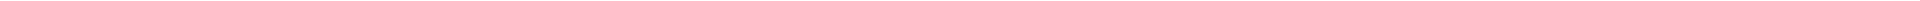 Стоматологическое обследование в Алматы, Астане (Нур-Султан), Атырау, Усть-Каменогорск, Уральск, Кокшетау в Казахстане, фото 10